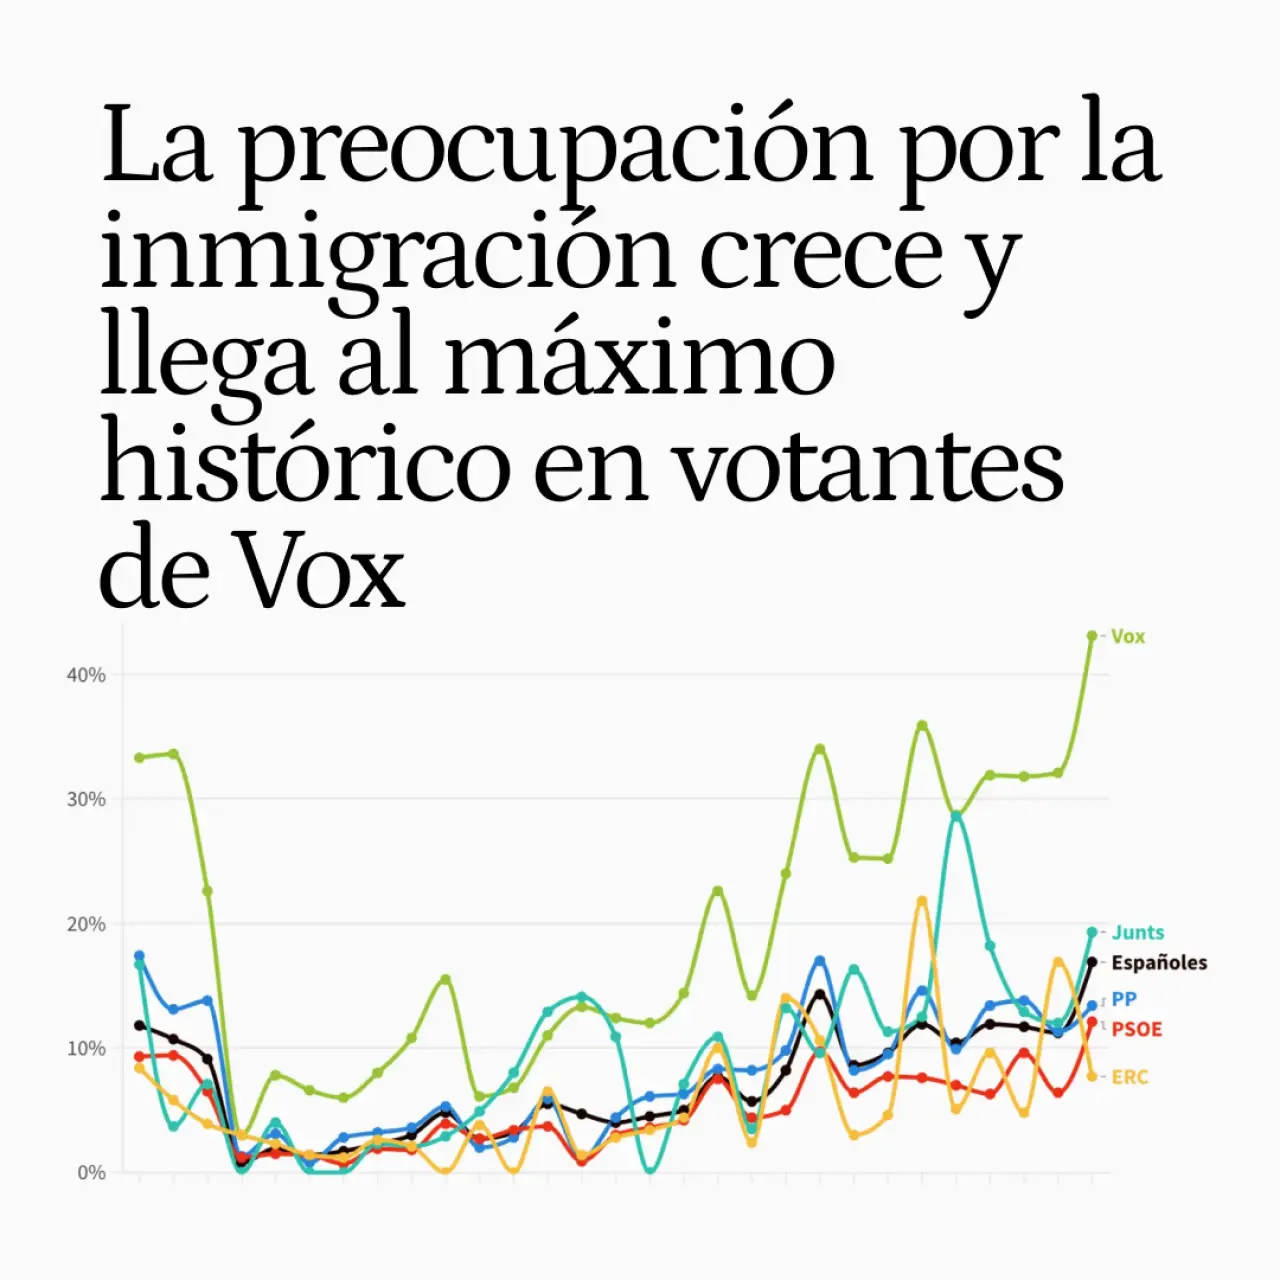 La preocupación por la inmigración crece entre los españoles y llega al máximo histórico en los votantes de Vox